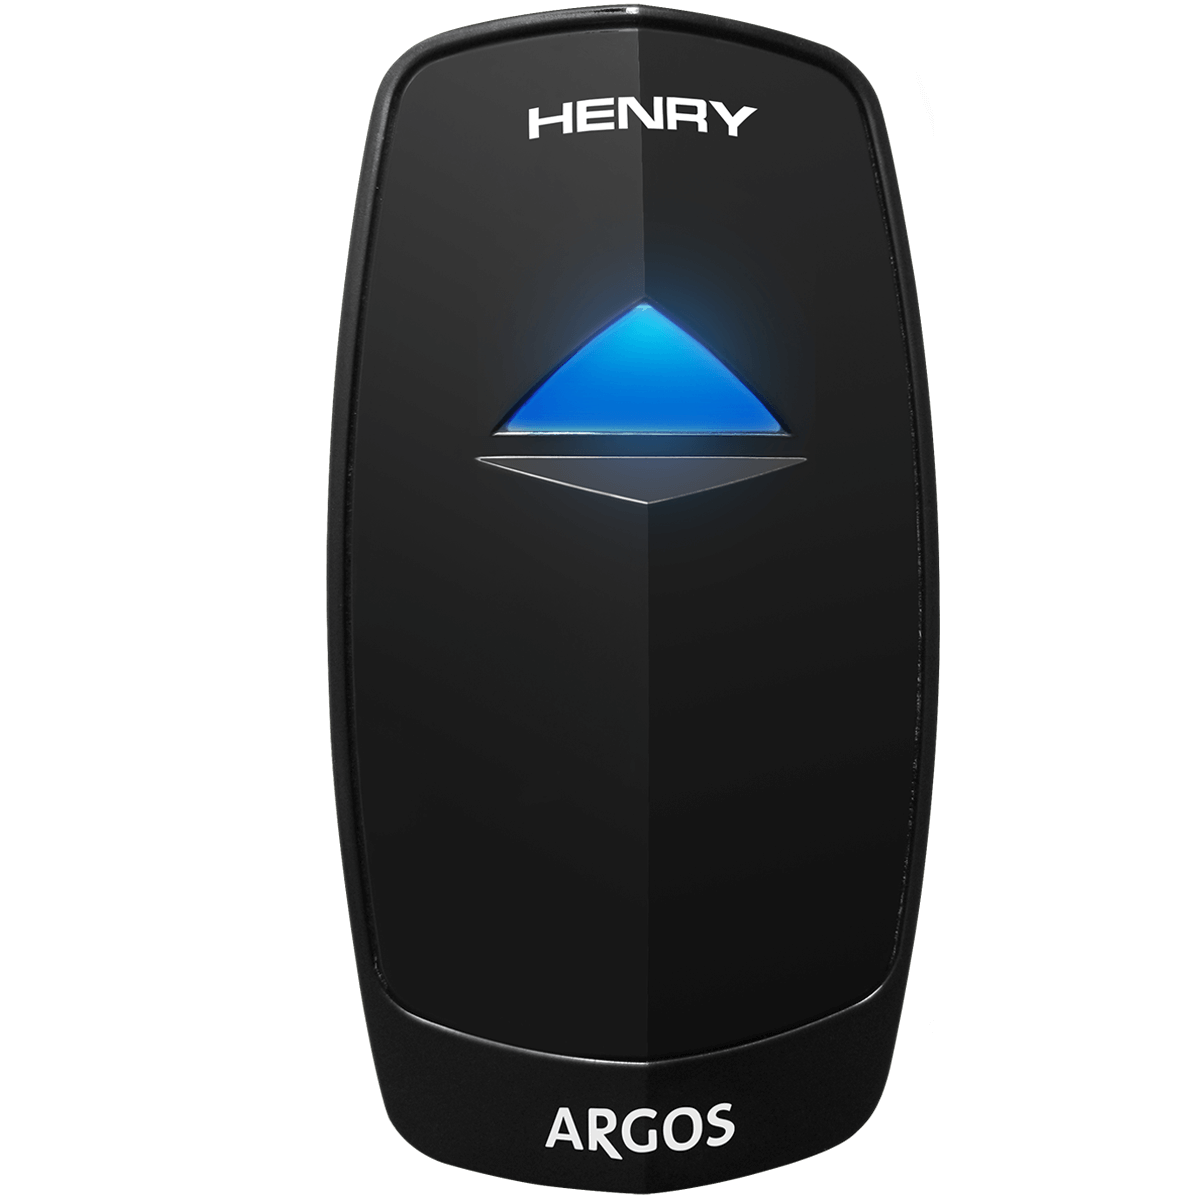 Controlador de Acesso Modelo Argos Advanced Proximidade - Henry